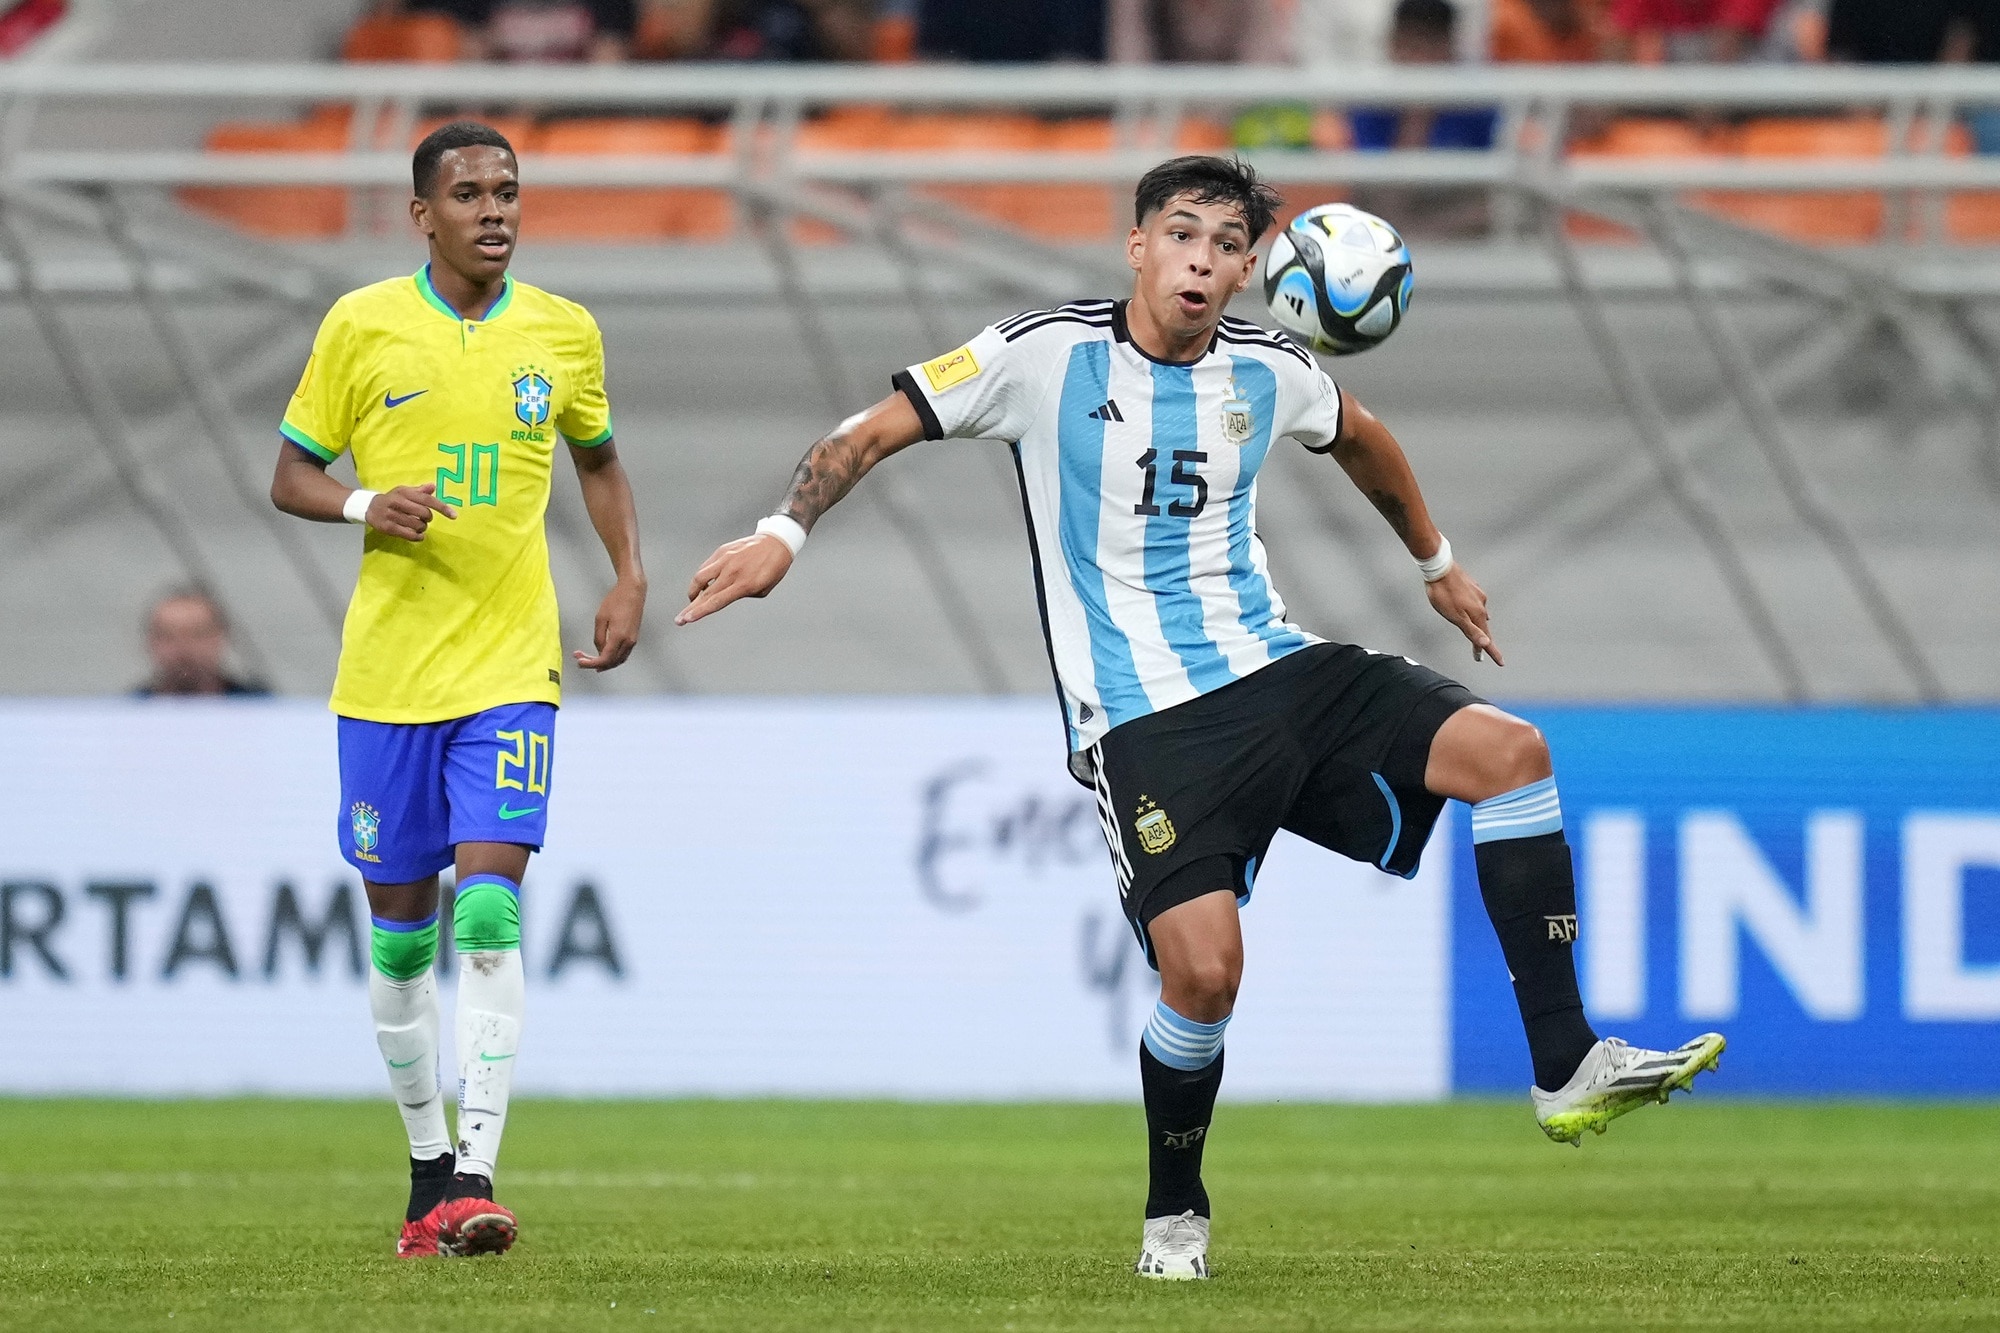 Bóng đá Brazil liên tiếp nhận cú sốc trước kình địch Argentina chỉ trong 4 ngày - Ảnh 1.